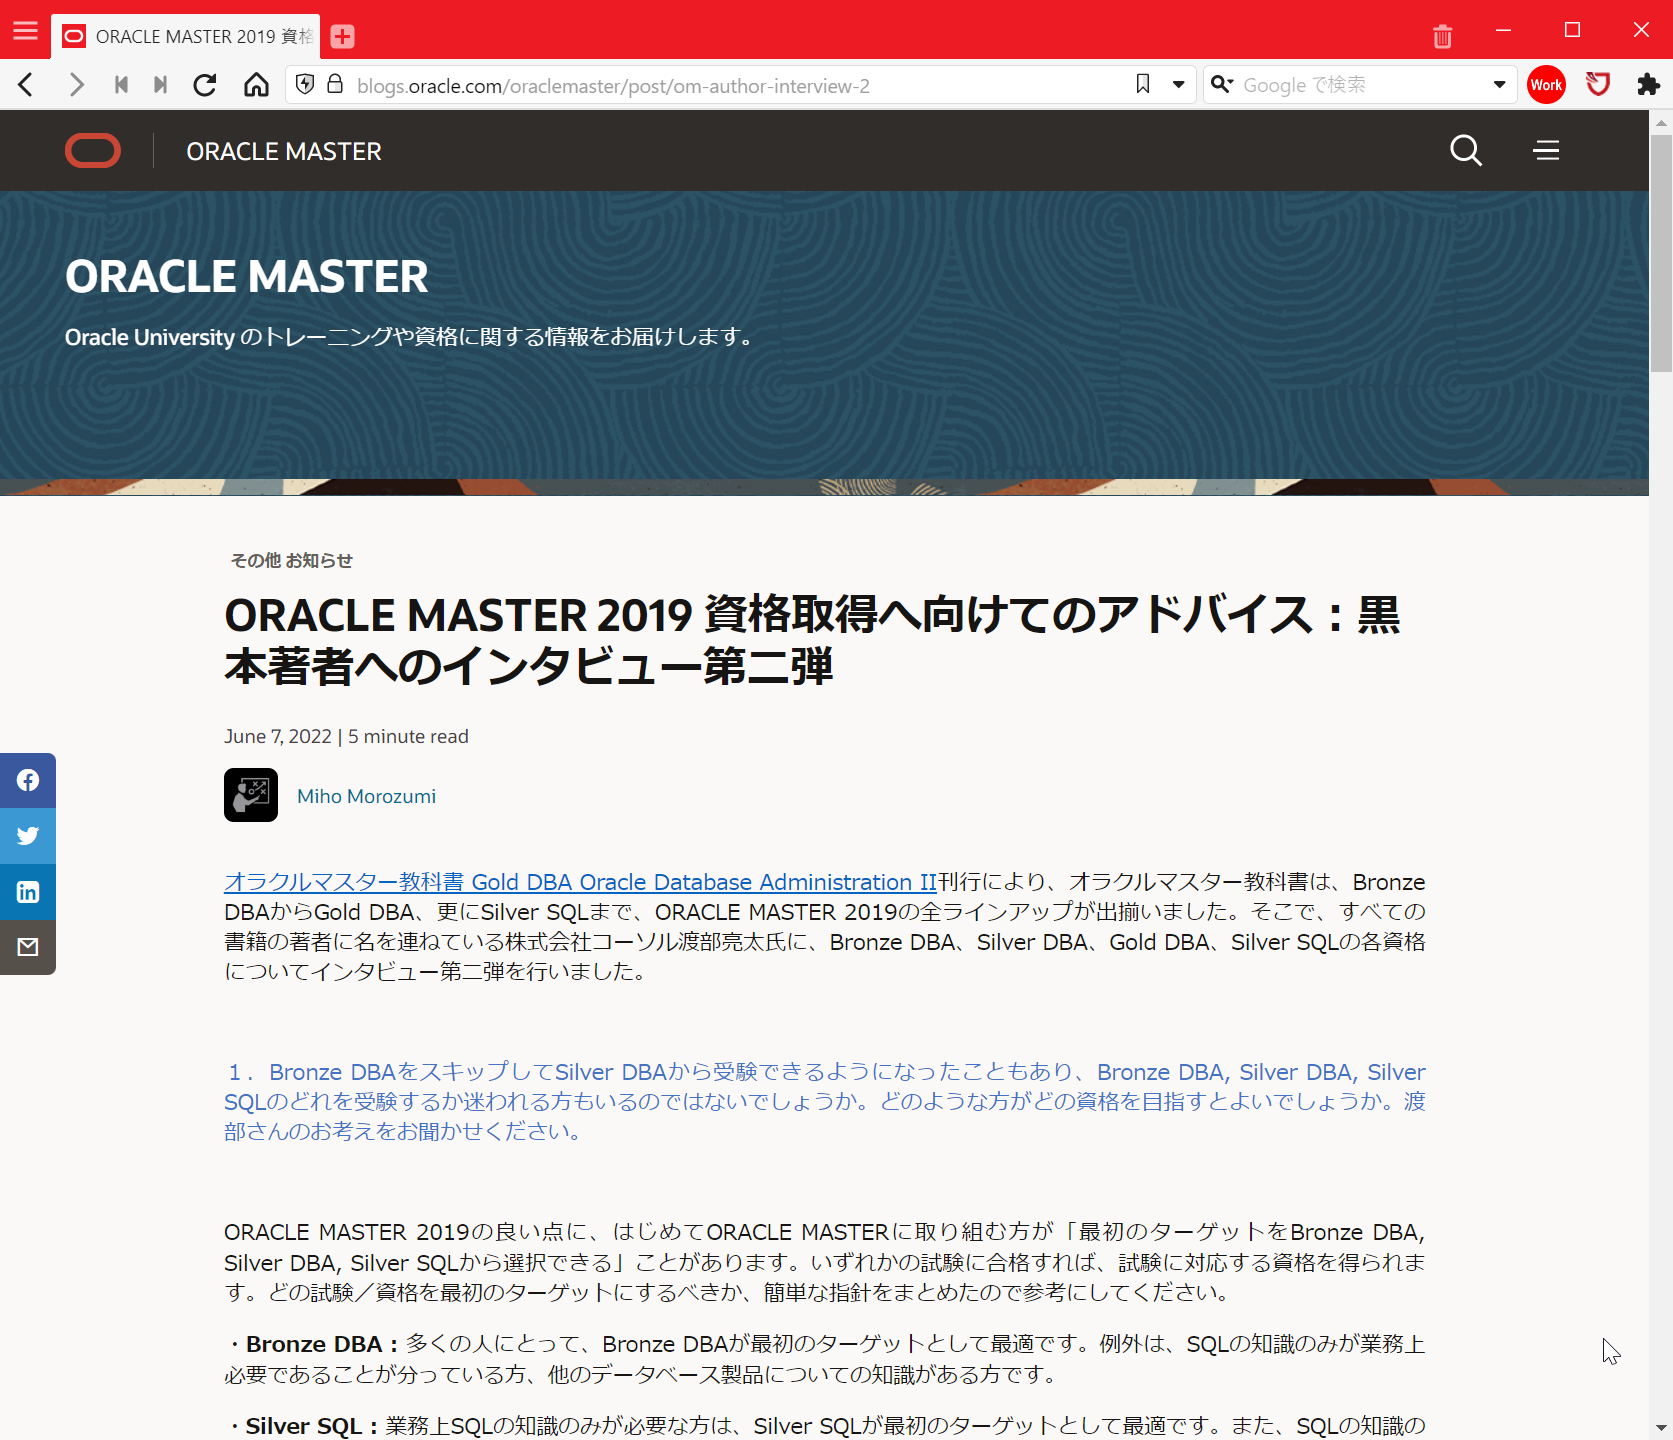 日本オラクル様のORACLE MASTERブログに著者インタビュー続編が掲載されました